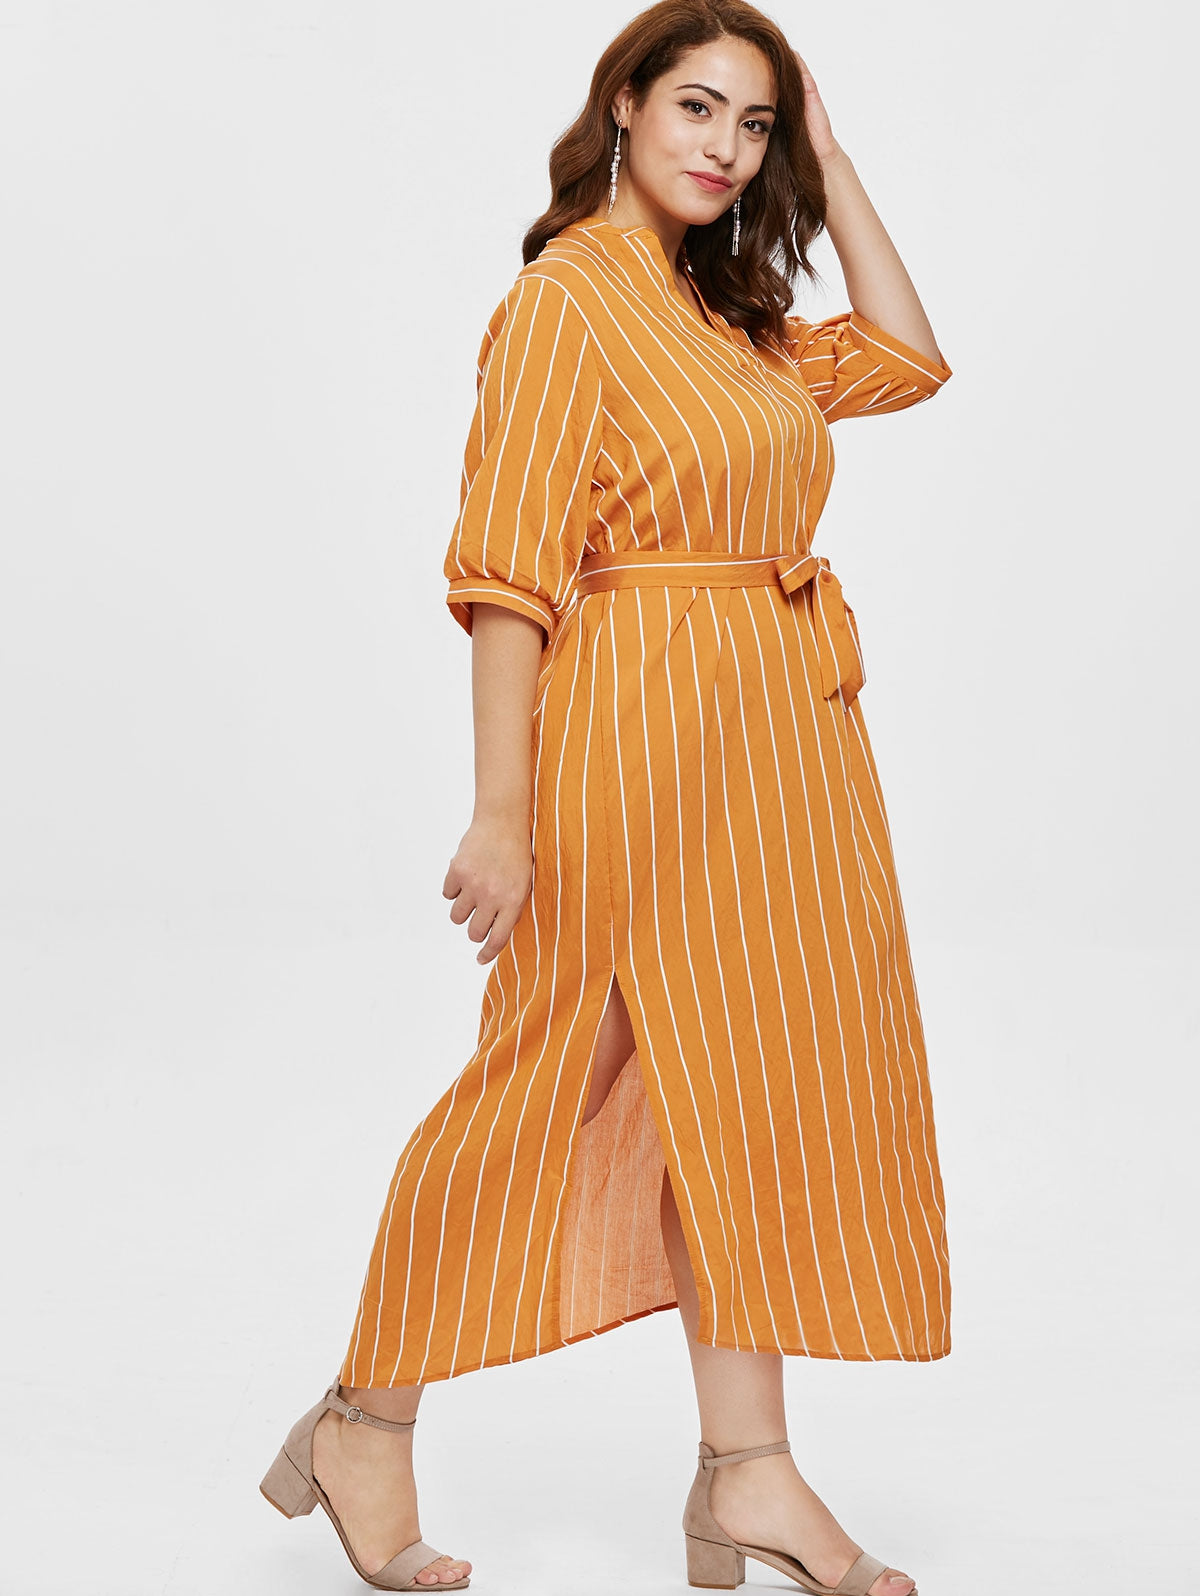 Women Plus Size Half Sleeve Striped Ankle Length Dress - DromedarShop.com Online Boutique